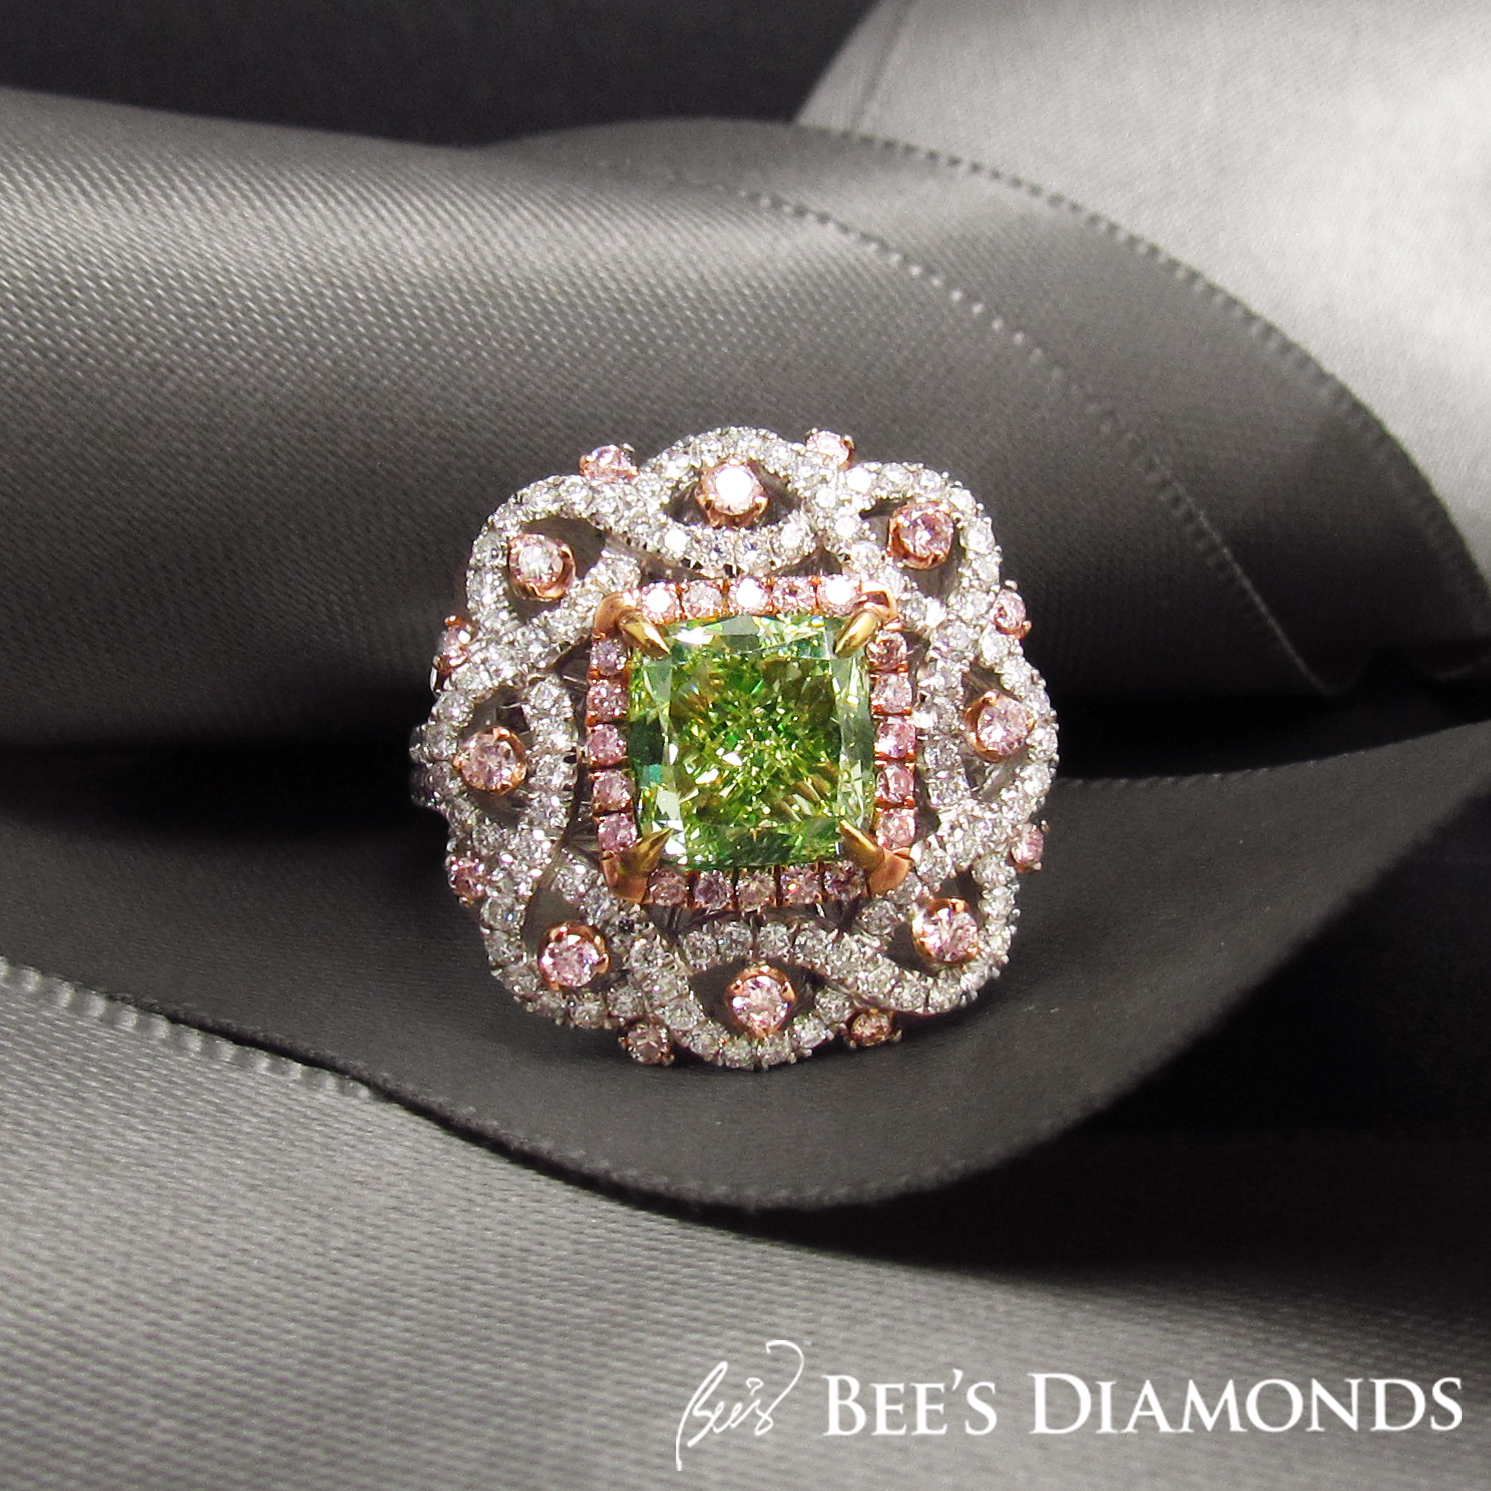 Green diamond with pink diamond halo | Bee's Diamonds